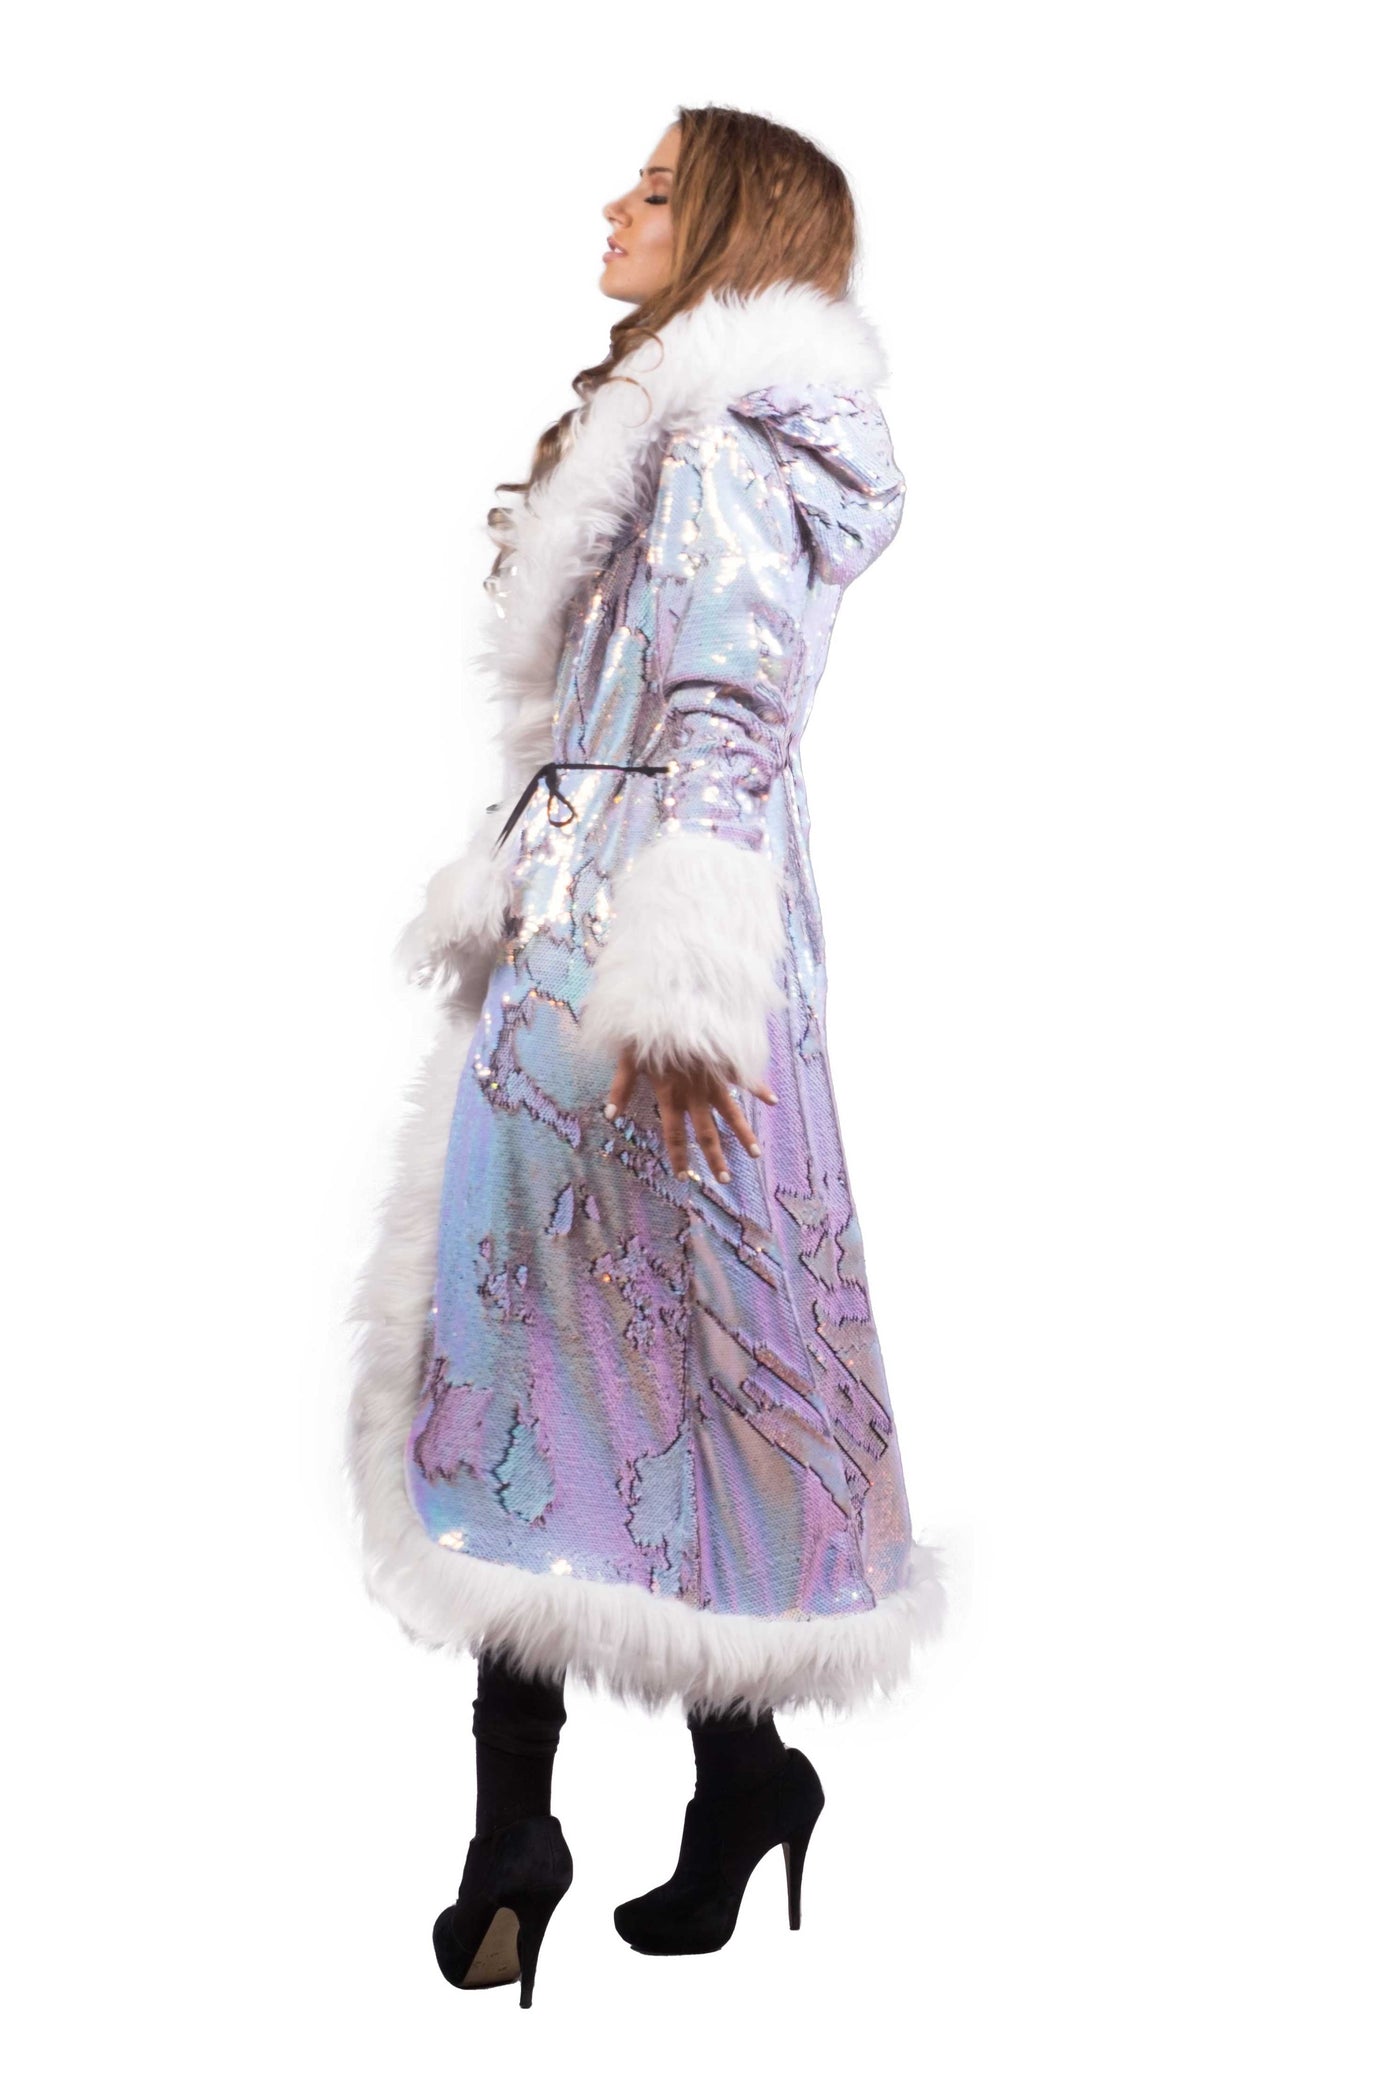 Women's Sequin Temptress Coat in "Fairy" STOCK